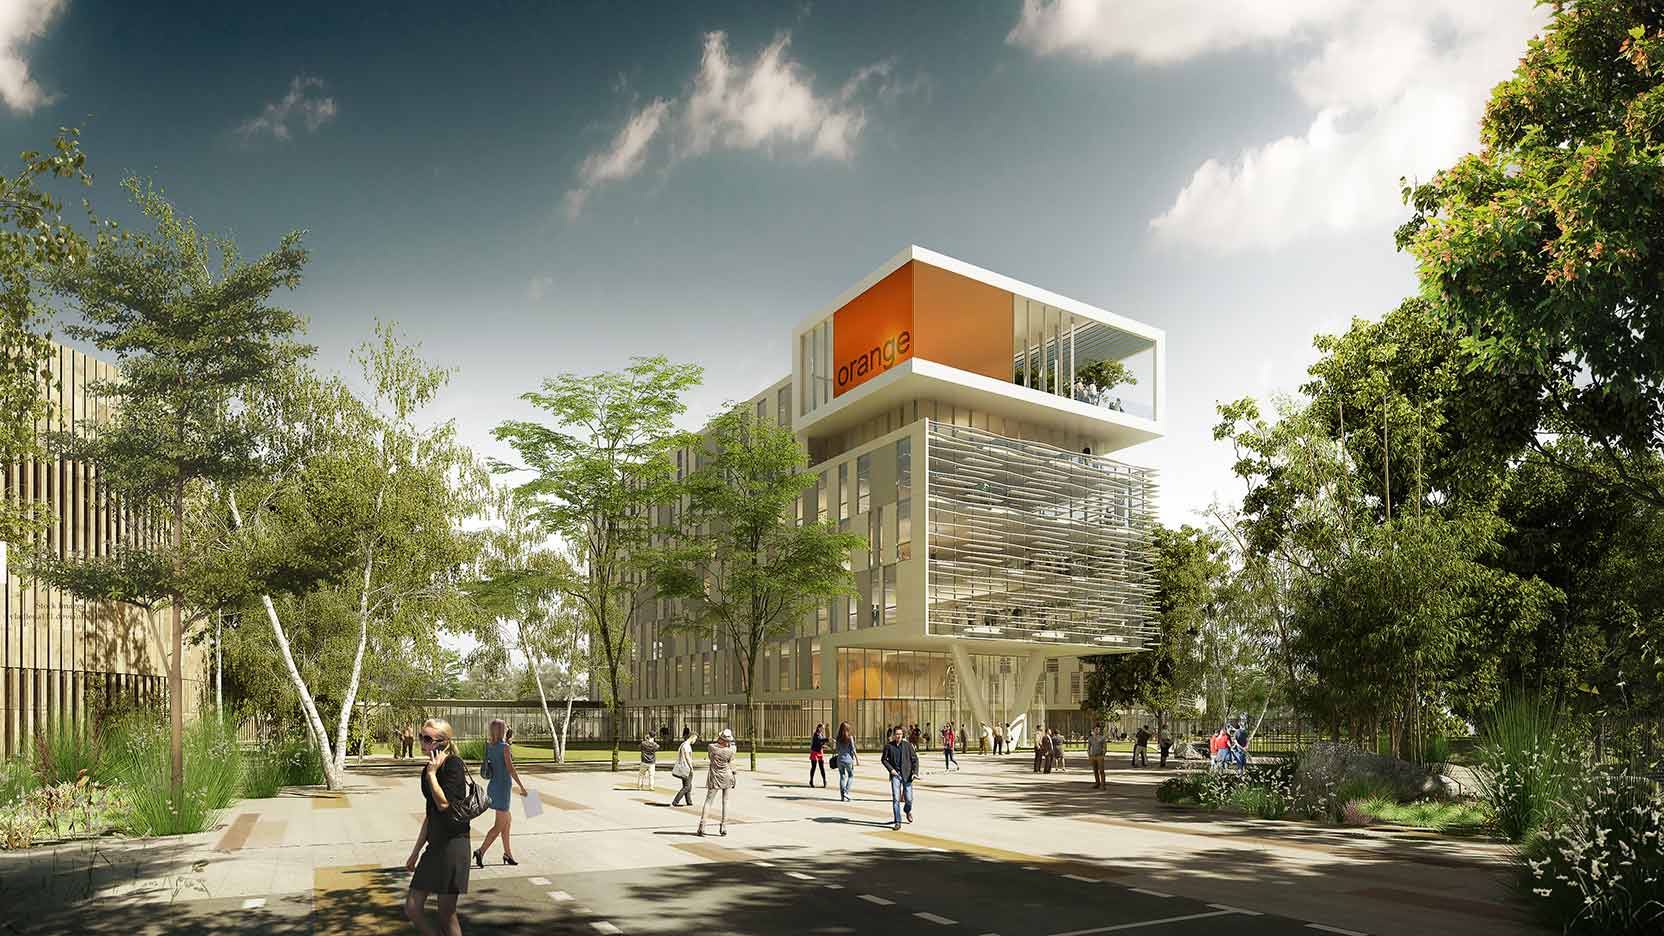 Pitch Promotion et GA Smart Building viennent de signer la future réalisation du Campus Orange à Balma